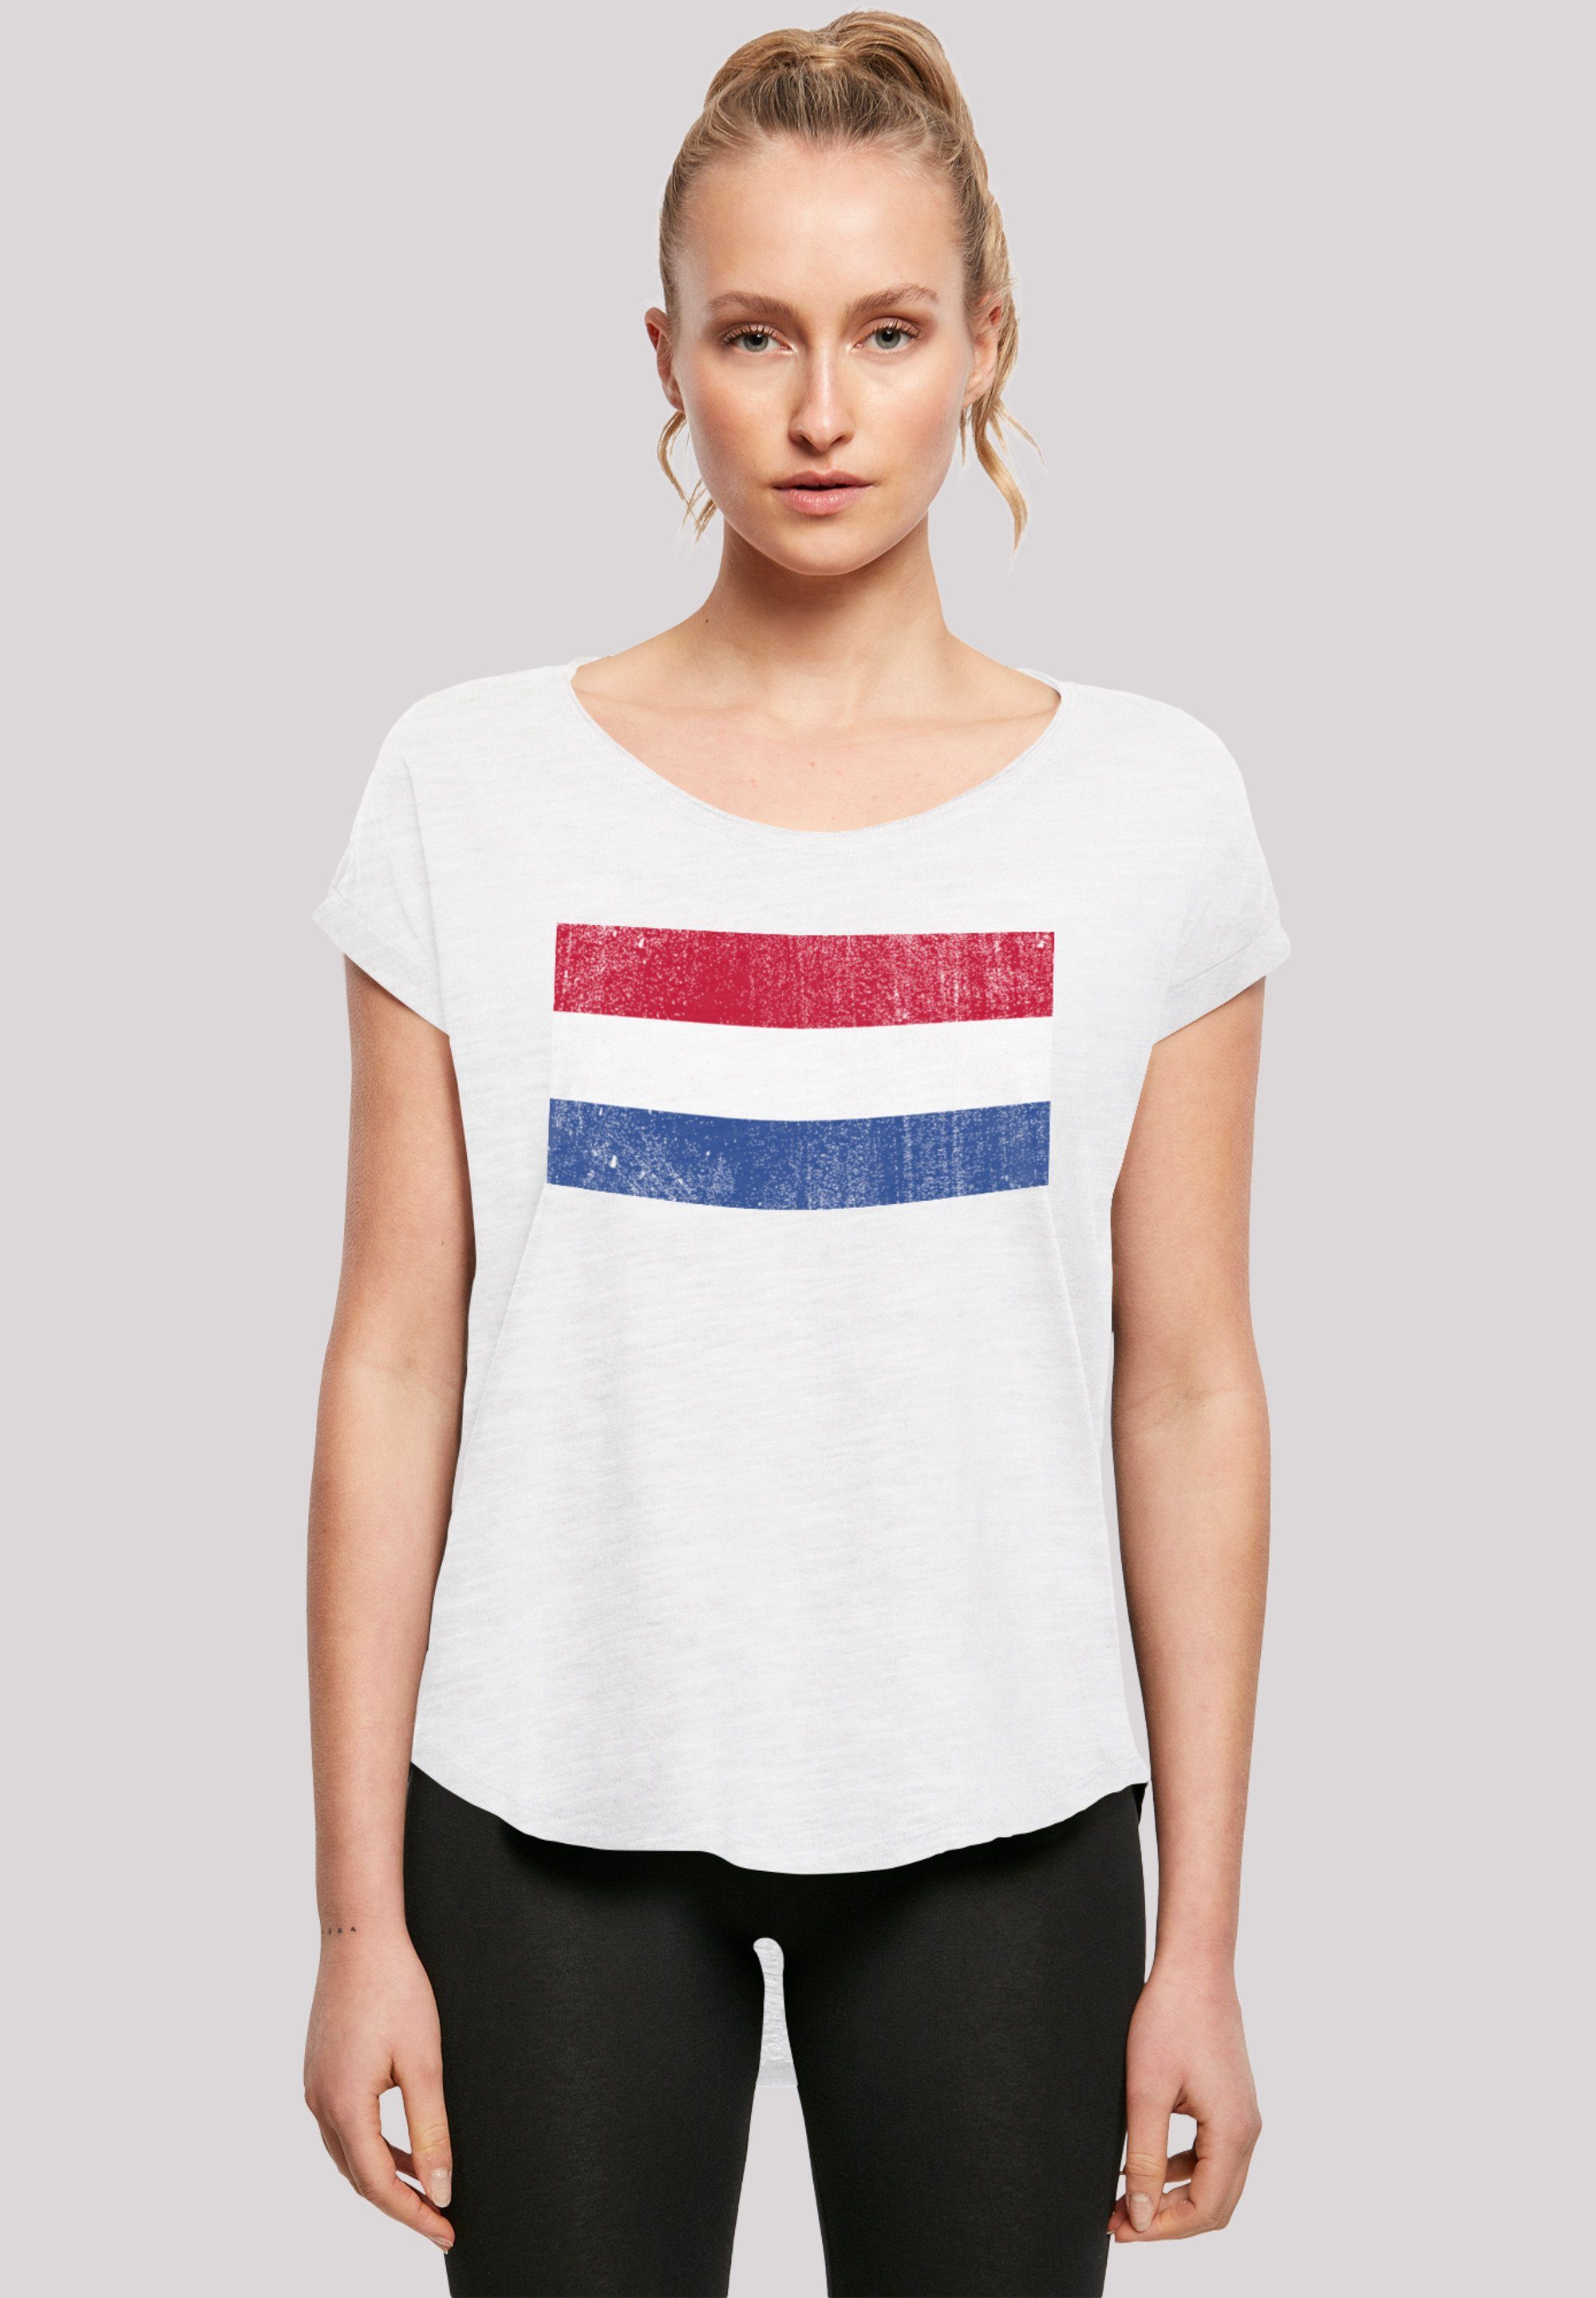 Sehr F4NT4STIC Netherlands Tragekomfort NIederlande Print, mit hohem Flagge Baumwollstoff T-Shirt Holland distressed weicher